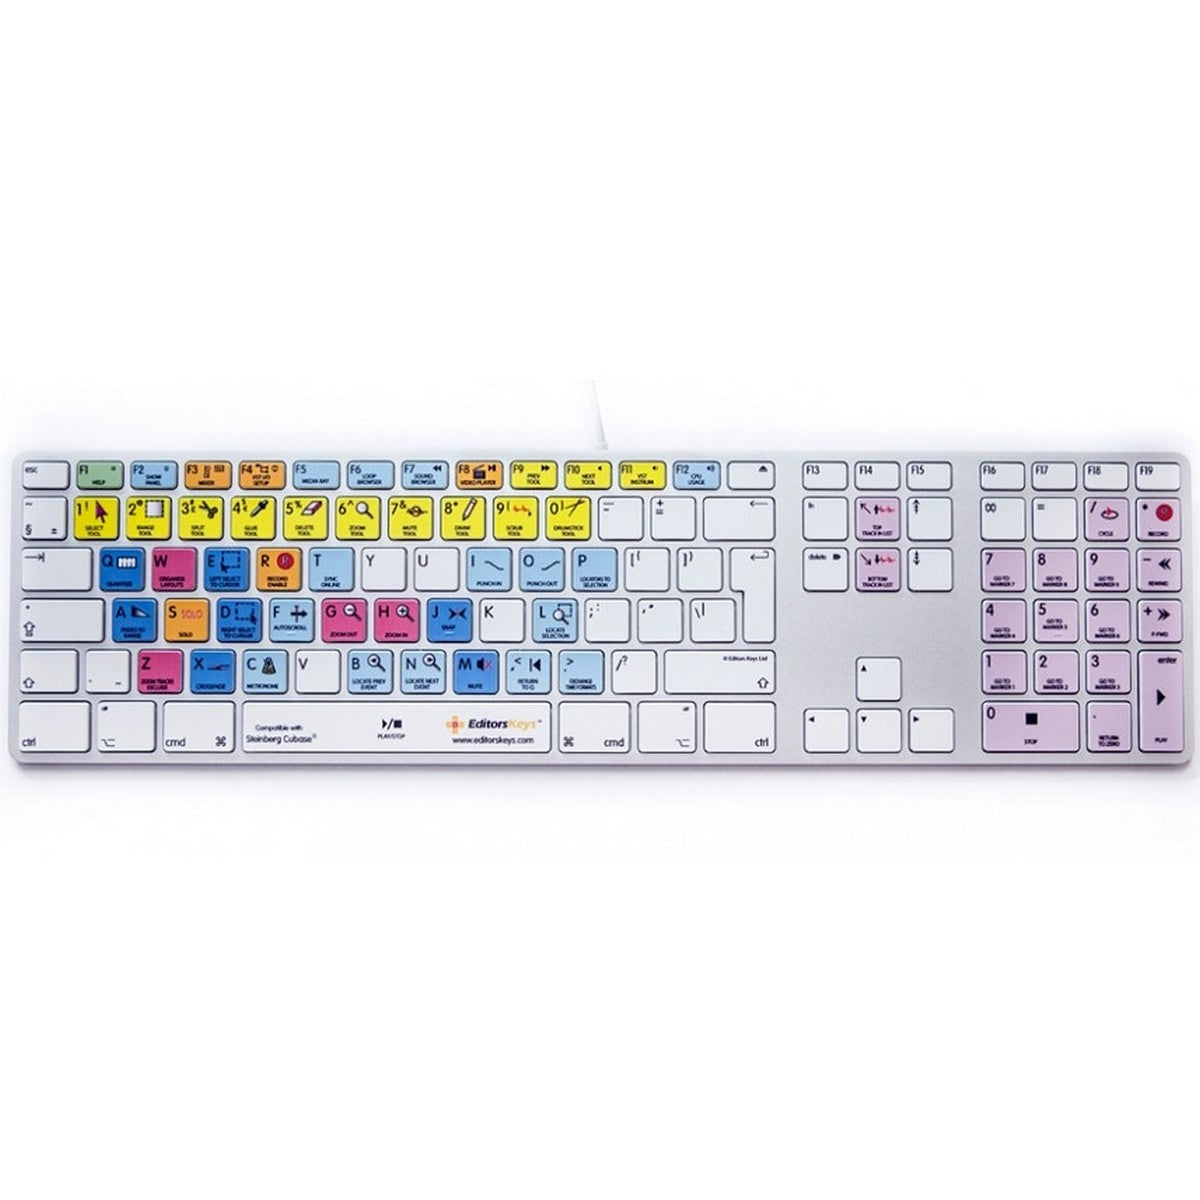 Editors Keys Apple Keyboard for Cubase | Apple Shortcut Wired Keyboard